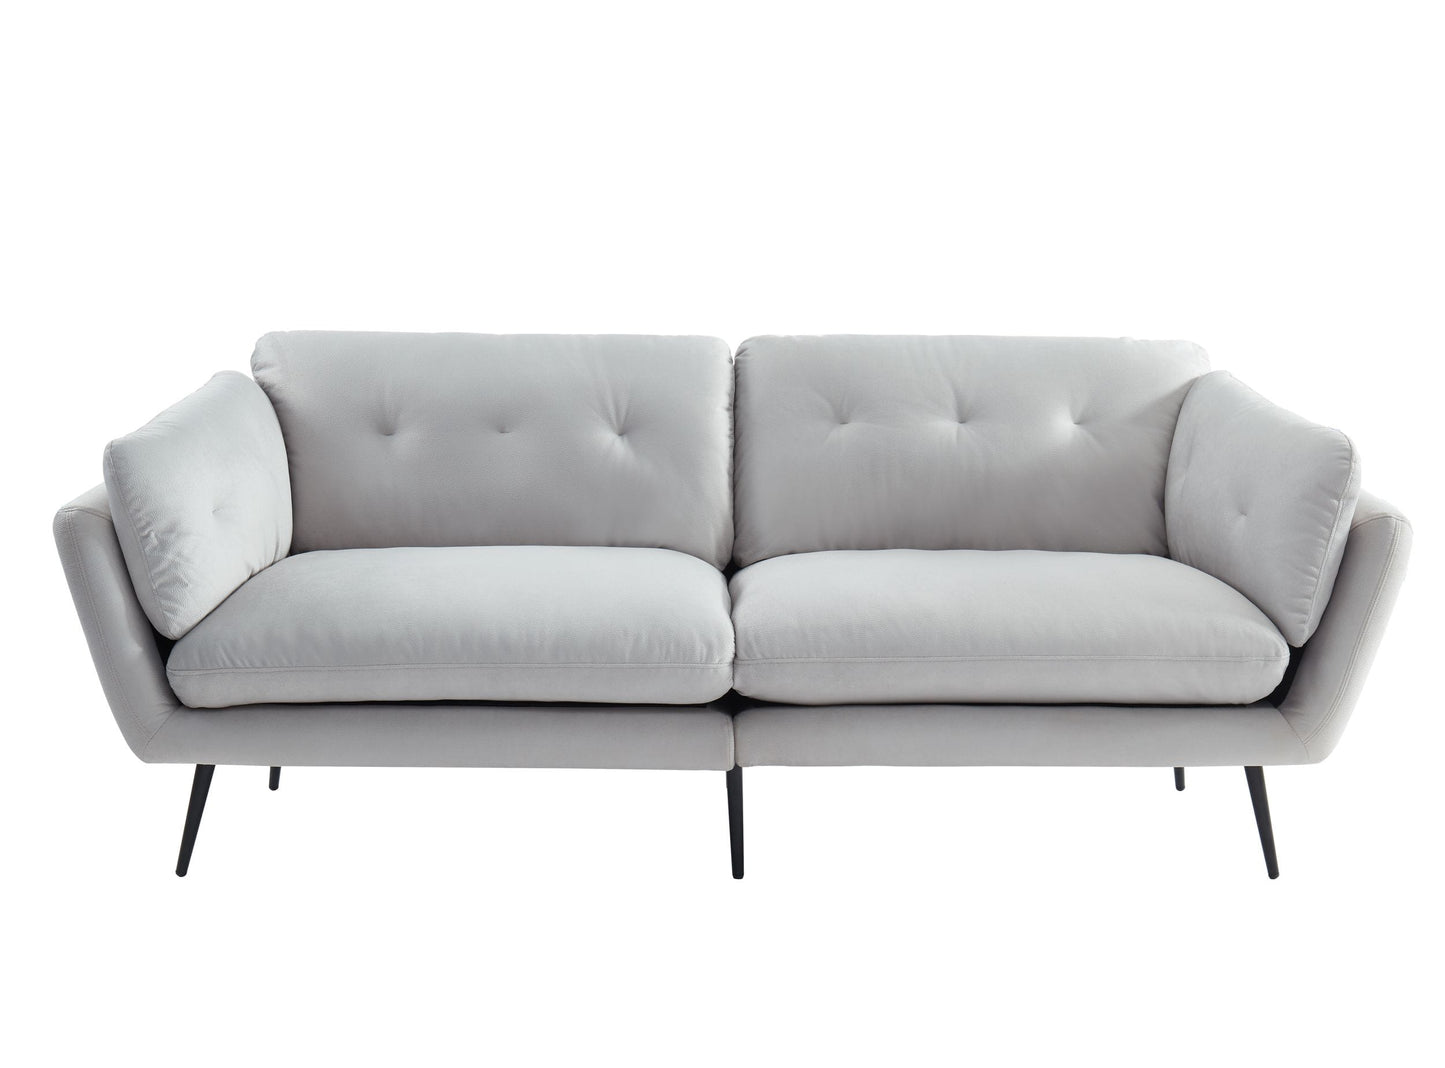 Divani Casa Cody - Modern Grey Fabric Sofa-2